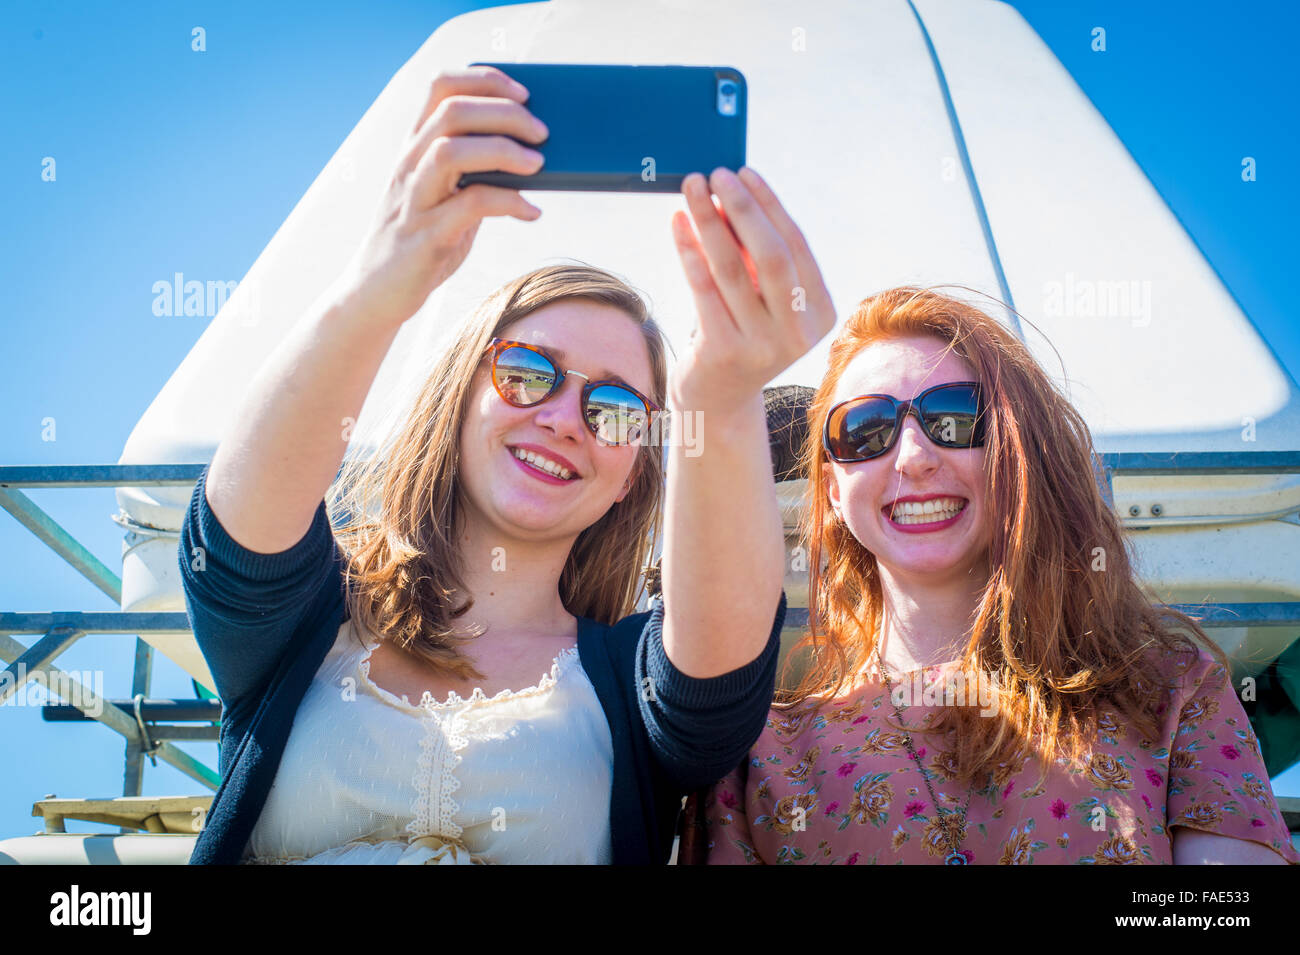 Las niñas teniendo un selfie con iPhone Foto de stock